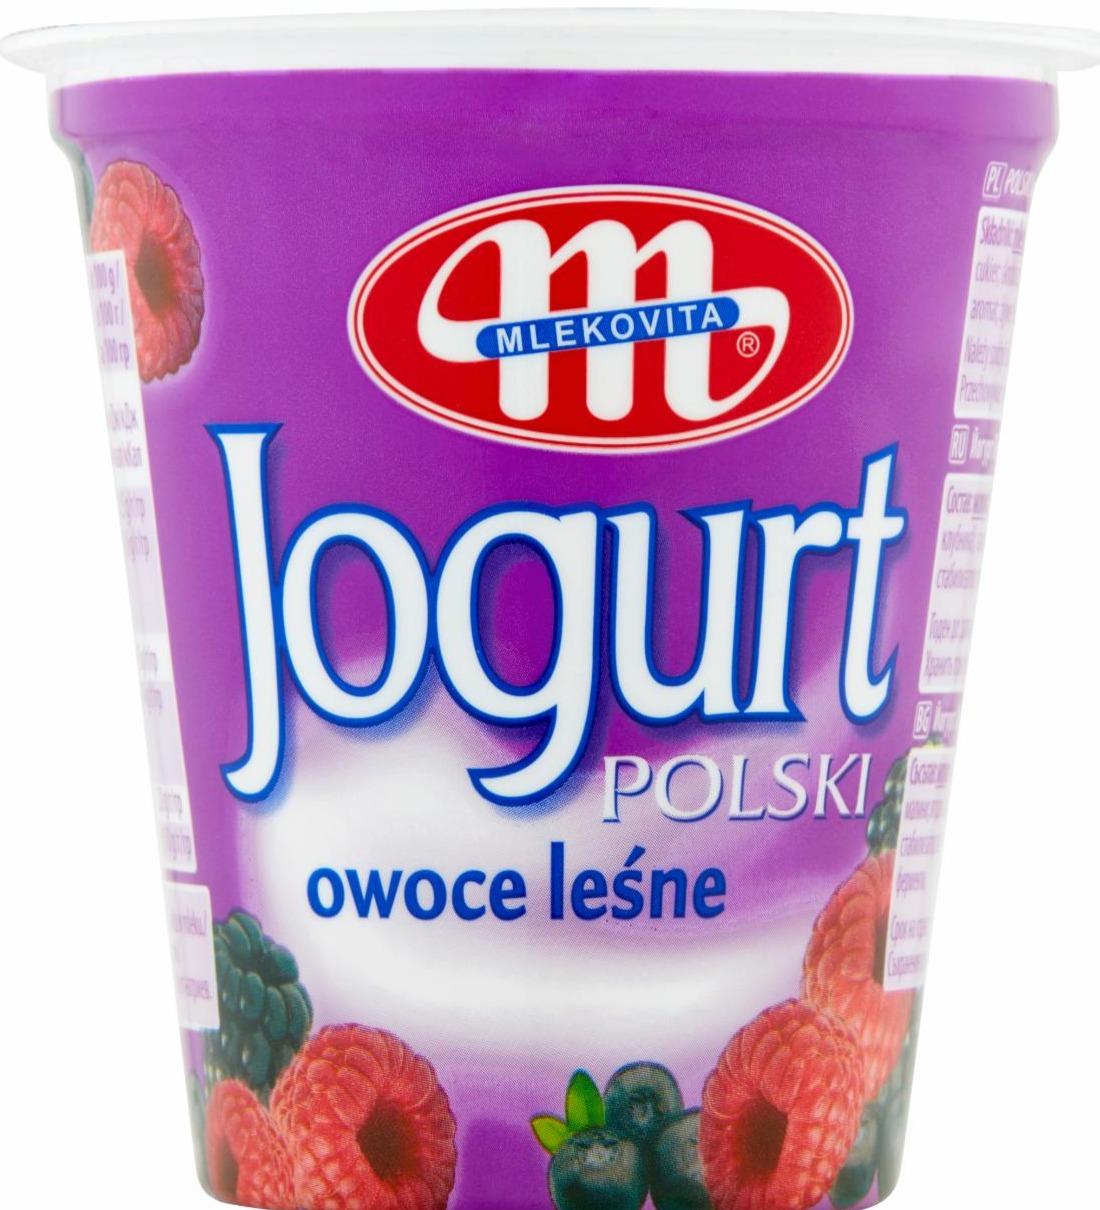 Фото - йогурт польский с лесными ягодами Mlekovita